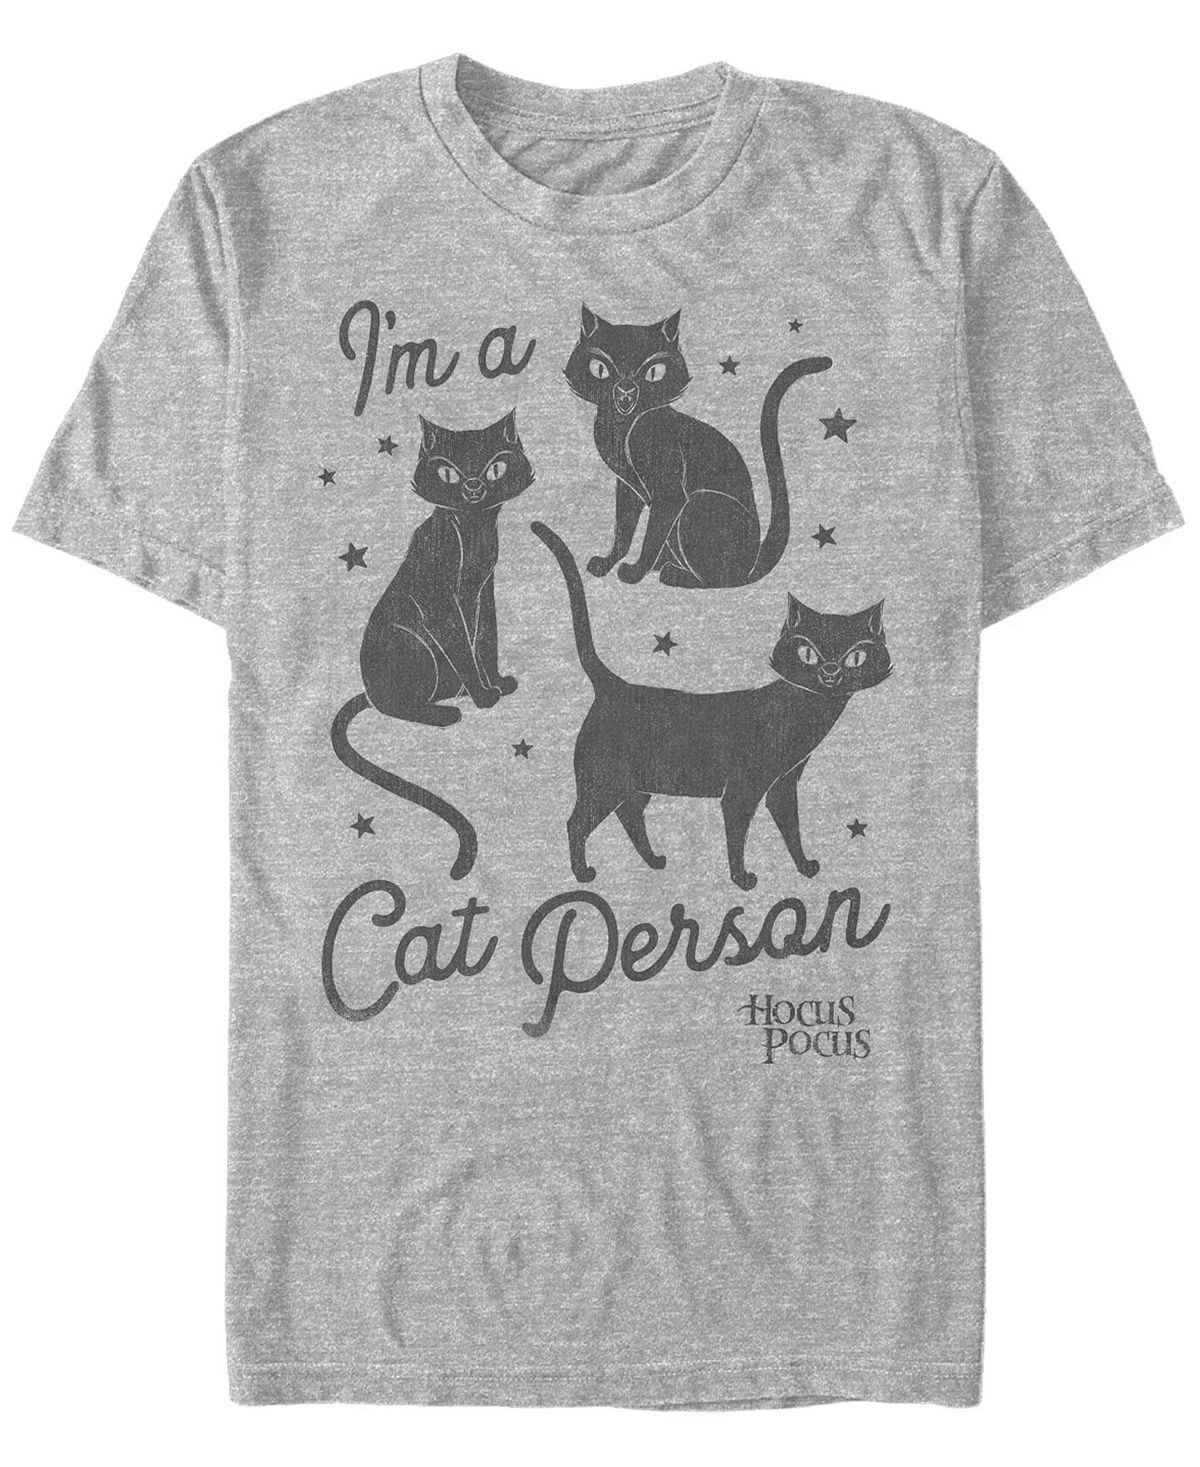 Мужская футболка с коротким рукавом hocus pocus cat person Fifth Sun, мульти цена